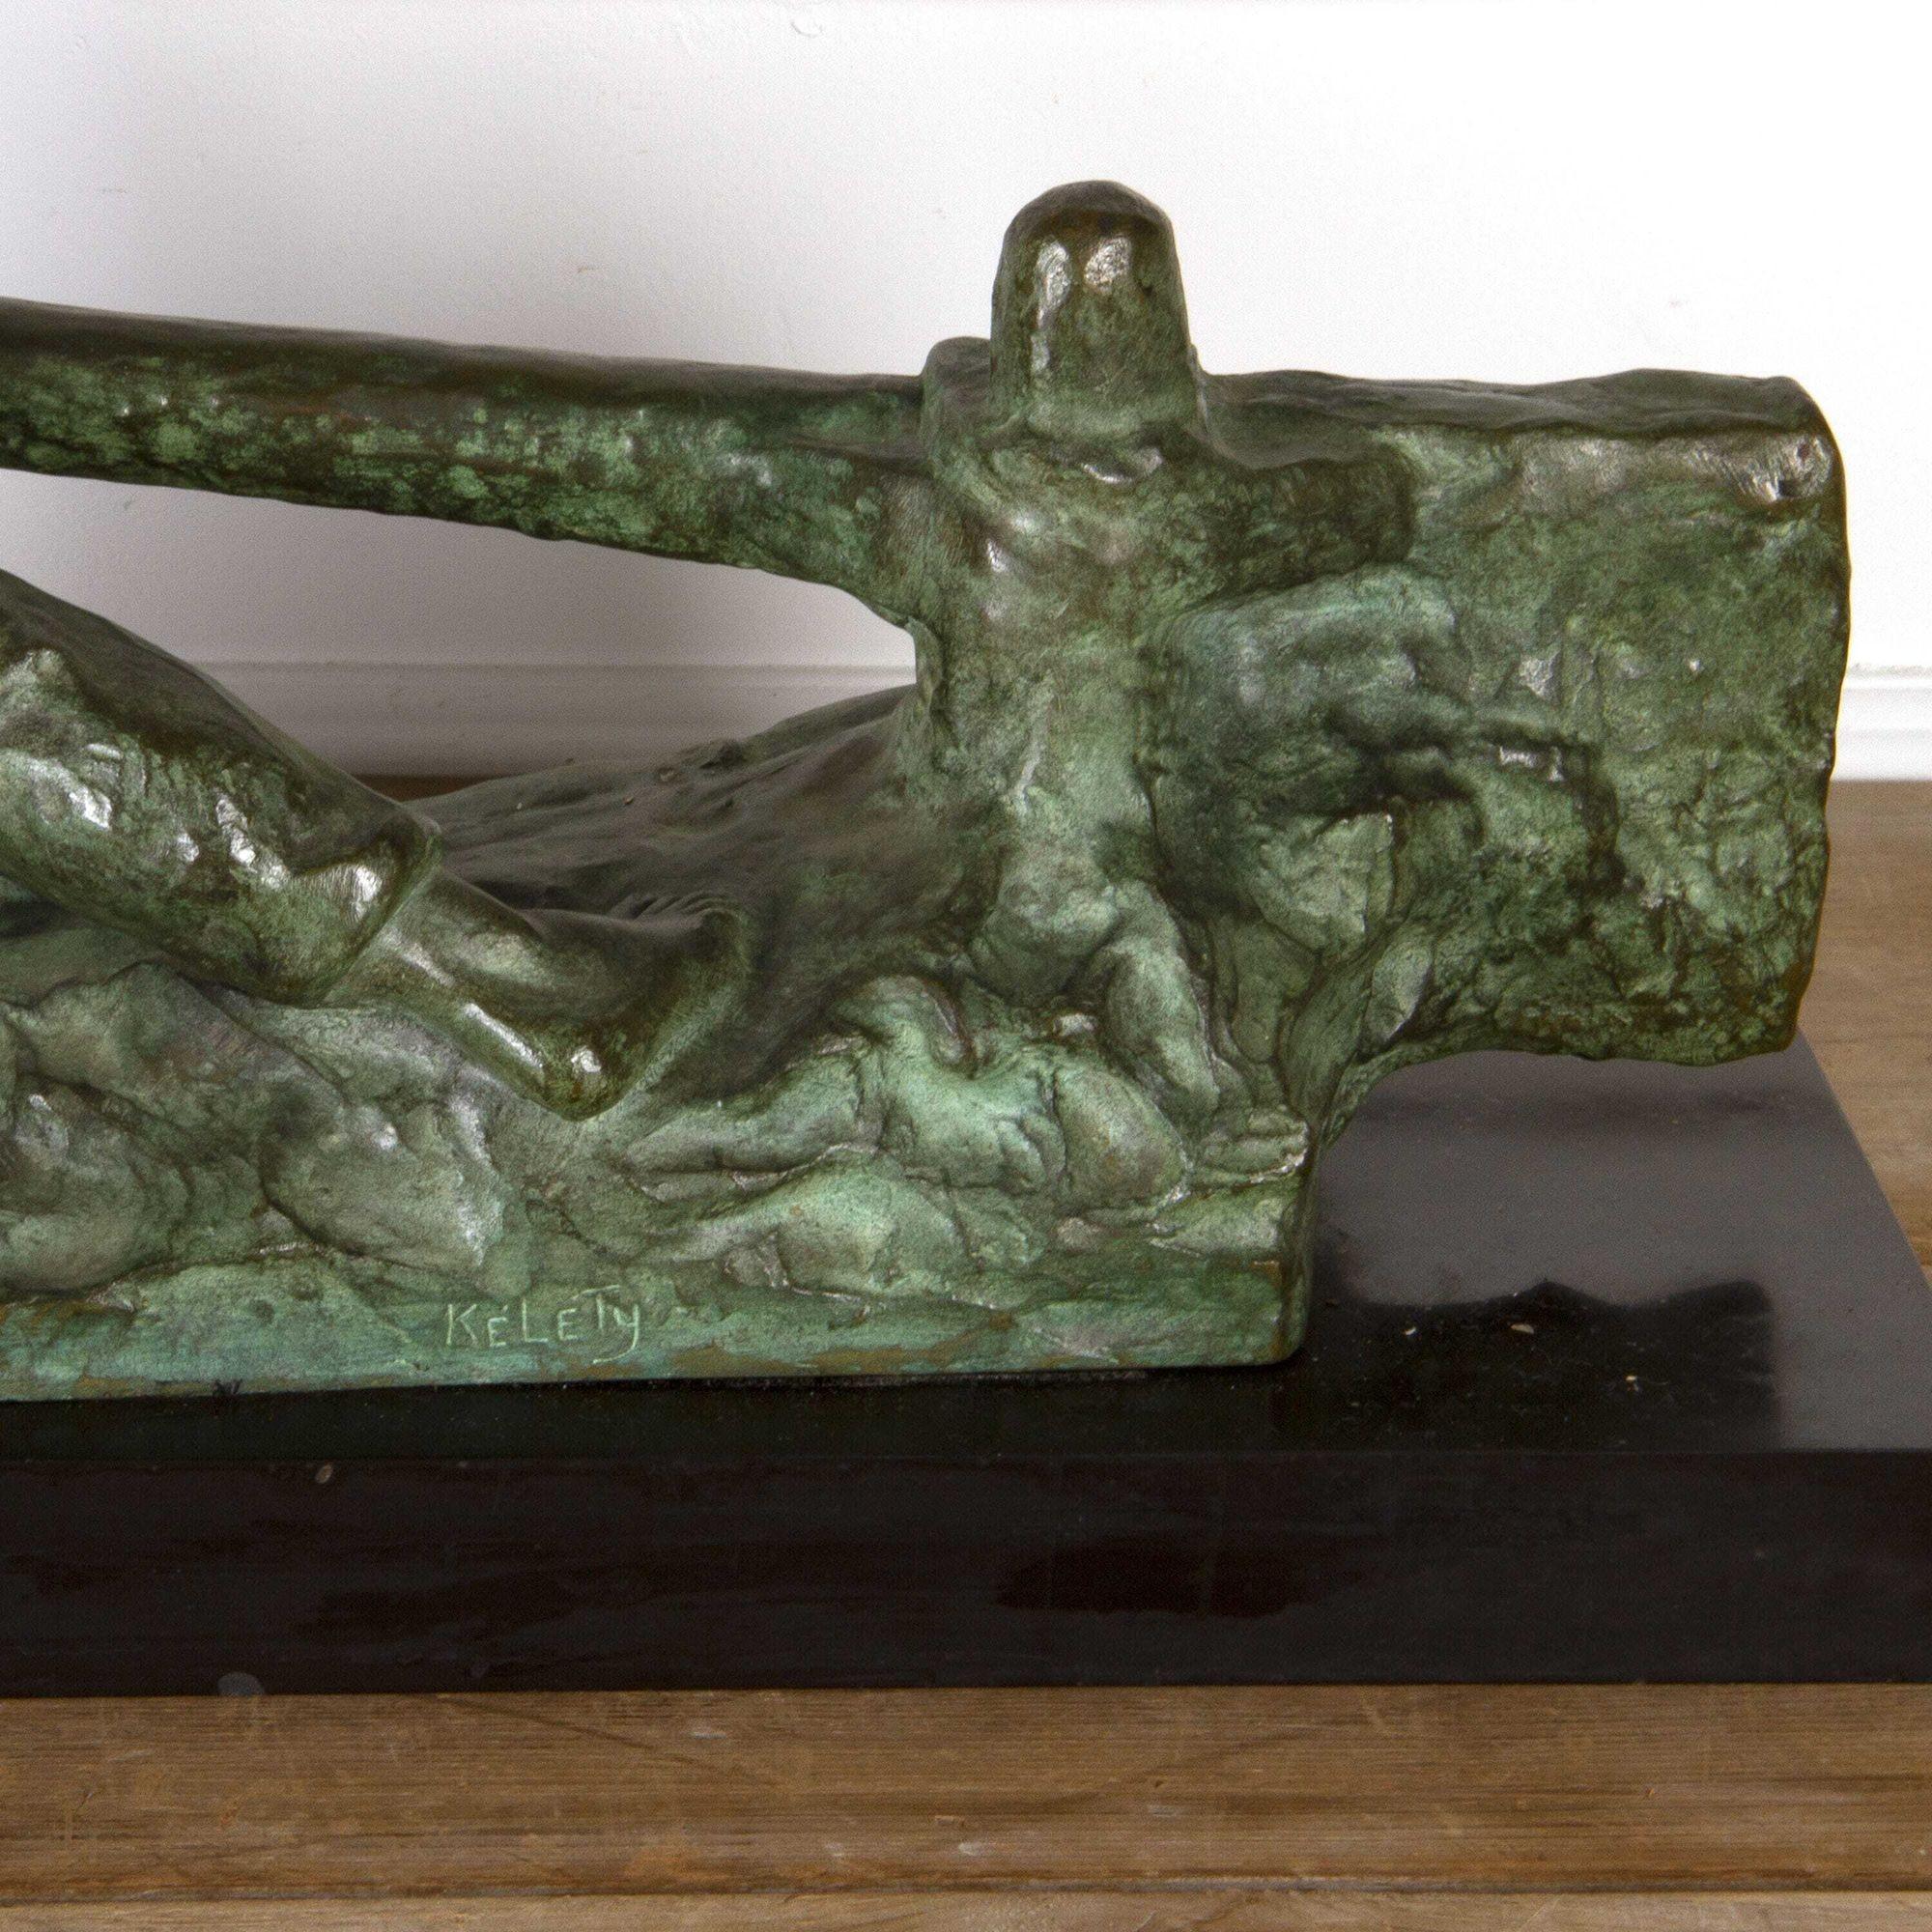 Fabuleuse sculpture Art déco en bronze d'Alexander Kelety, vers 1930. 

Alexander Kelety était un sculpteur hongrois du 20e siècle. Il était connu pour ses figurines en bronze et en ivoire. Dans ses créations, Alexander a souvent représenté des